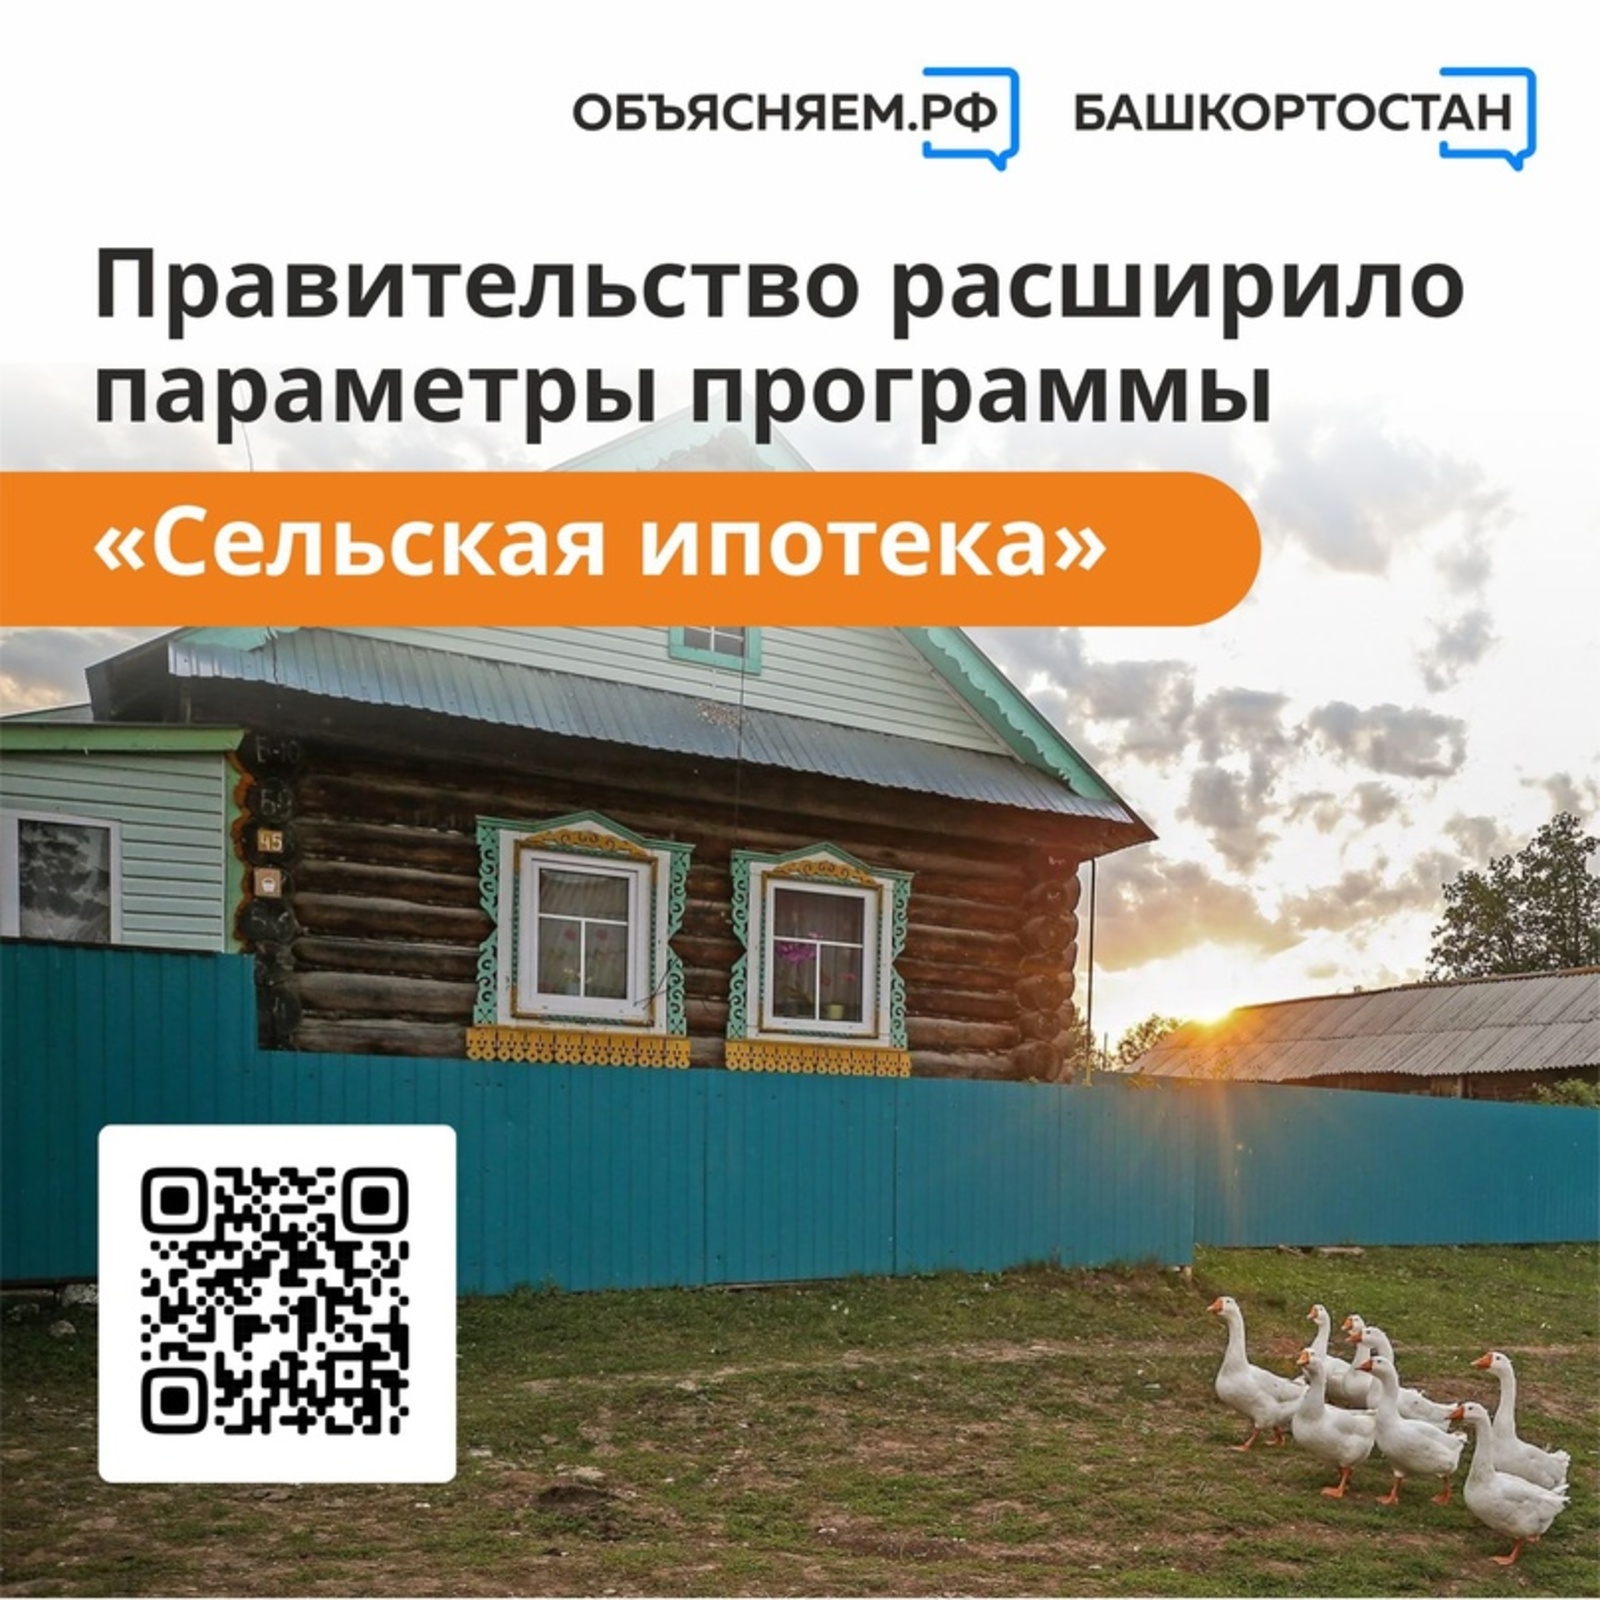 Правительство расширило параметры программы «Сельская ипотека»